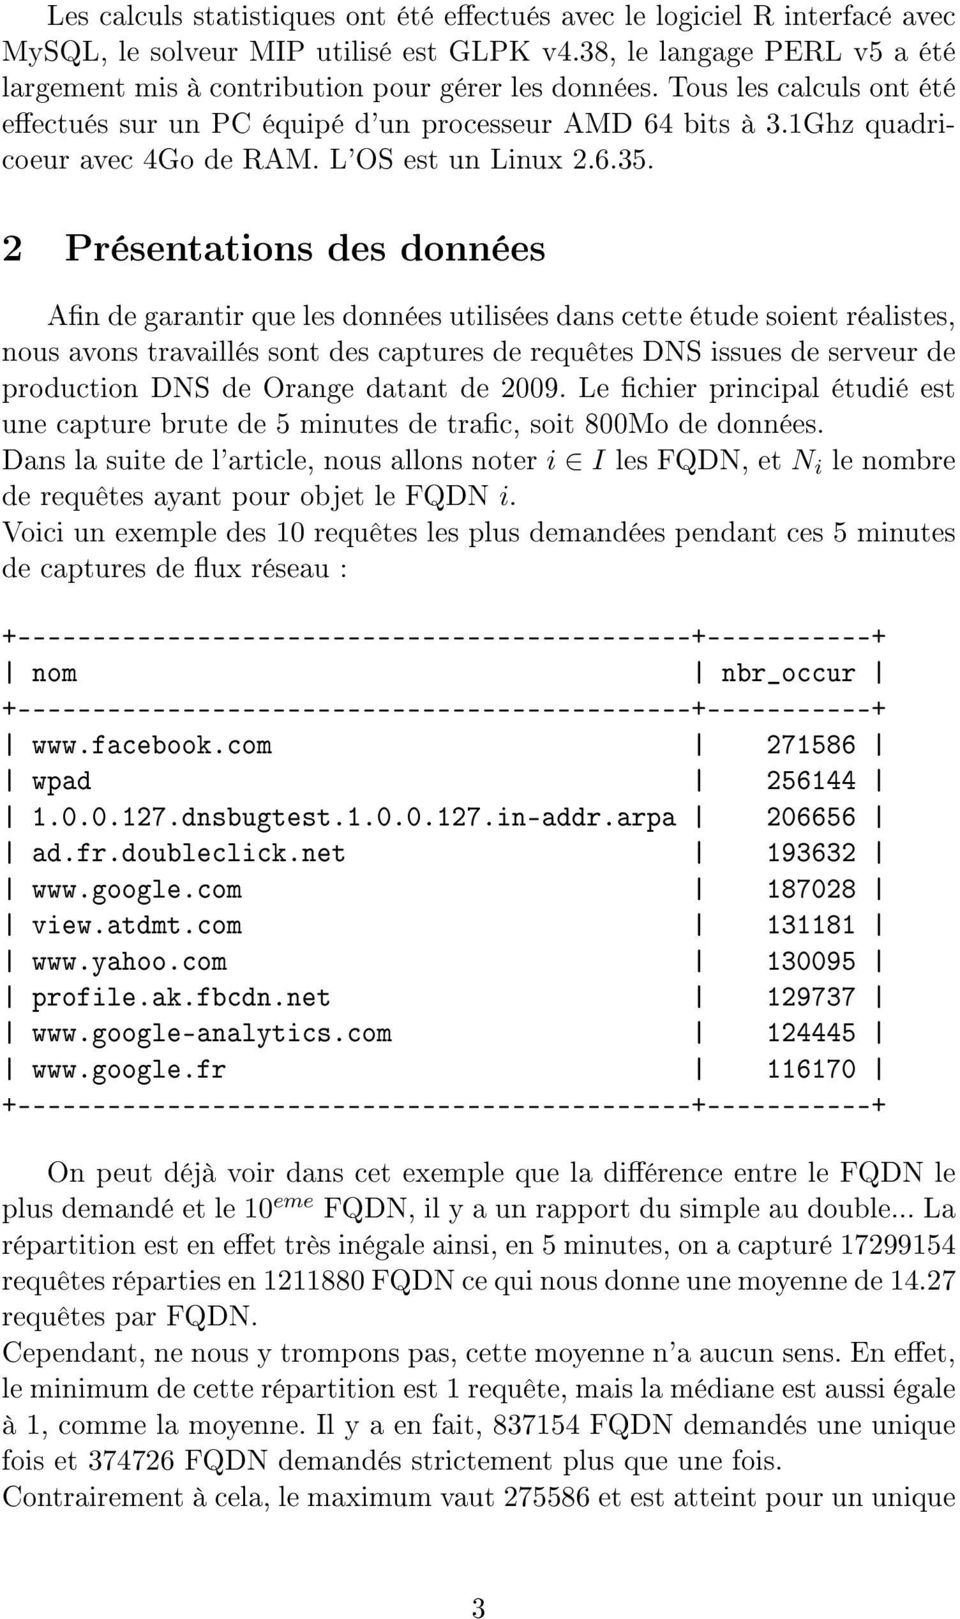 2 Présentations des données An de garantir que les données utilisées dans cette étude soient réalistes, nous avons travaillés sont des captures de requêtes DNS issues de serveur de production DNS de